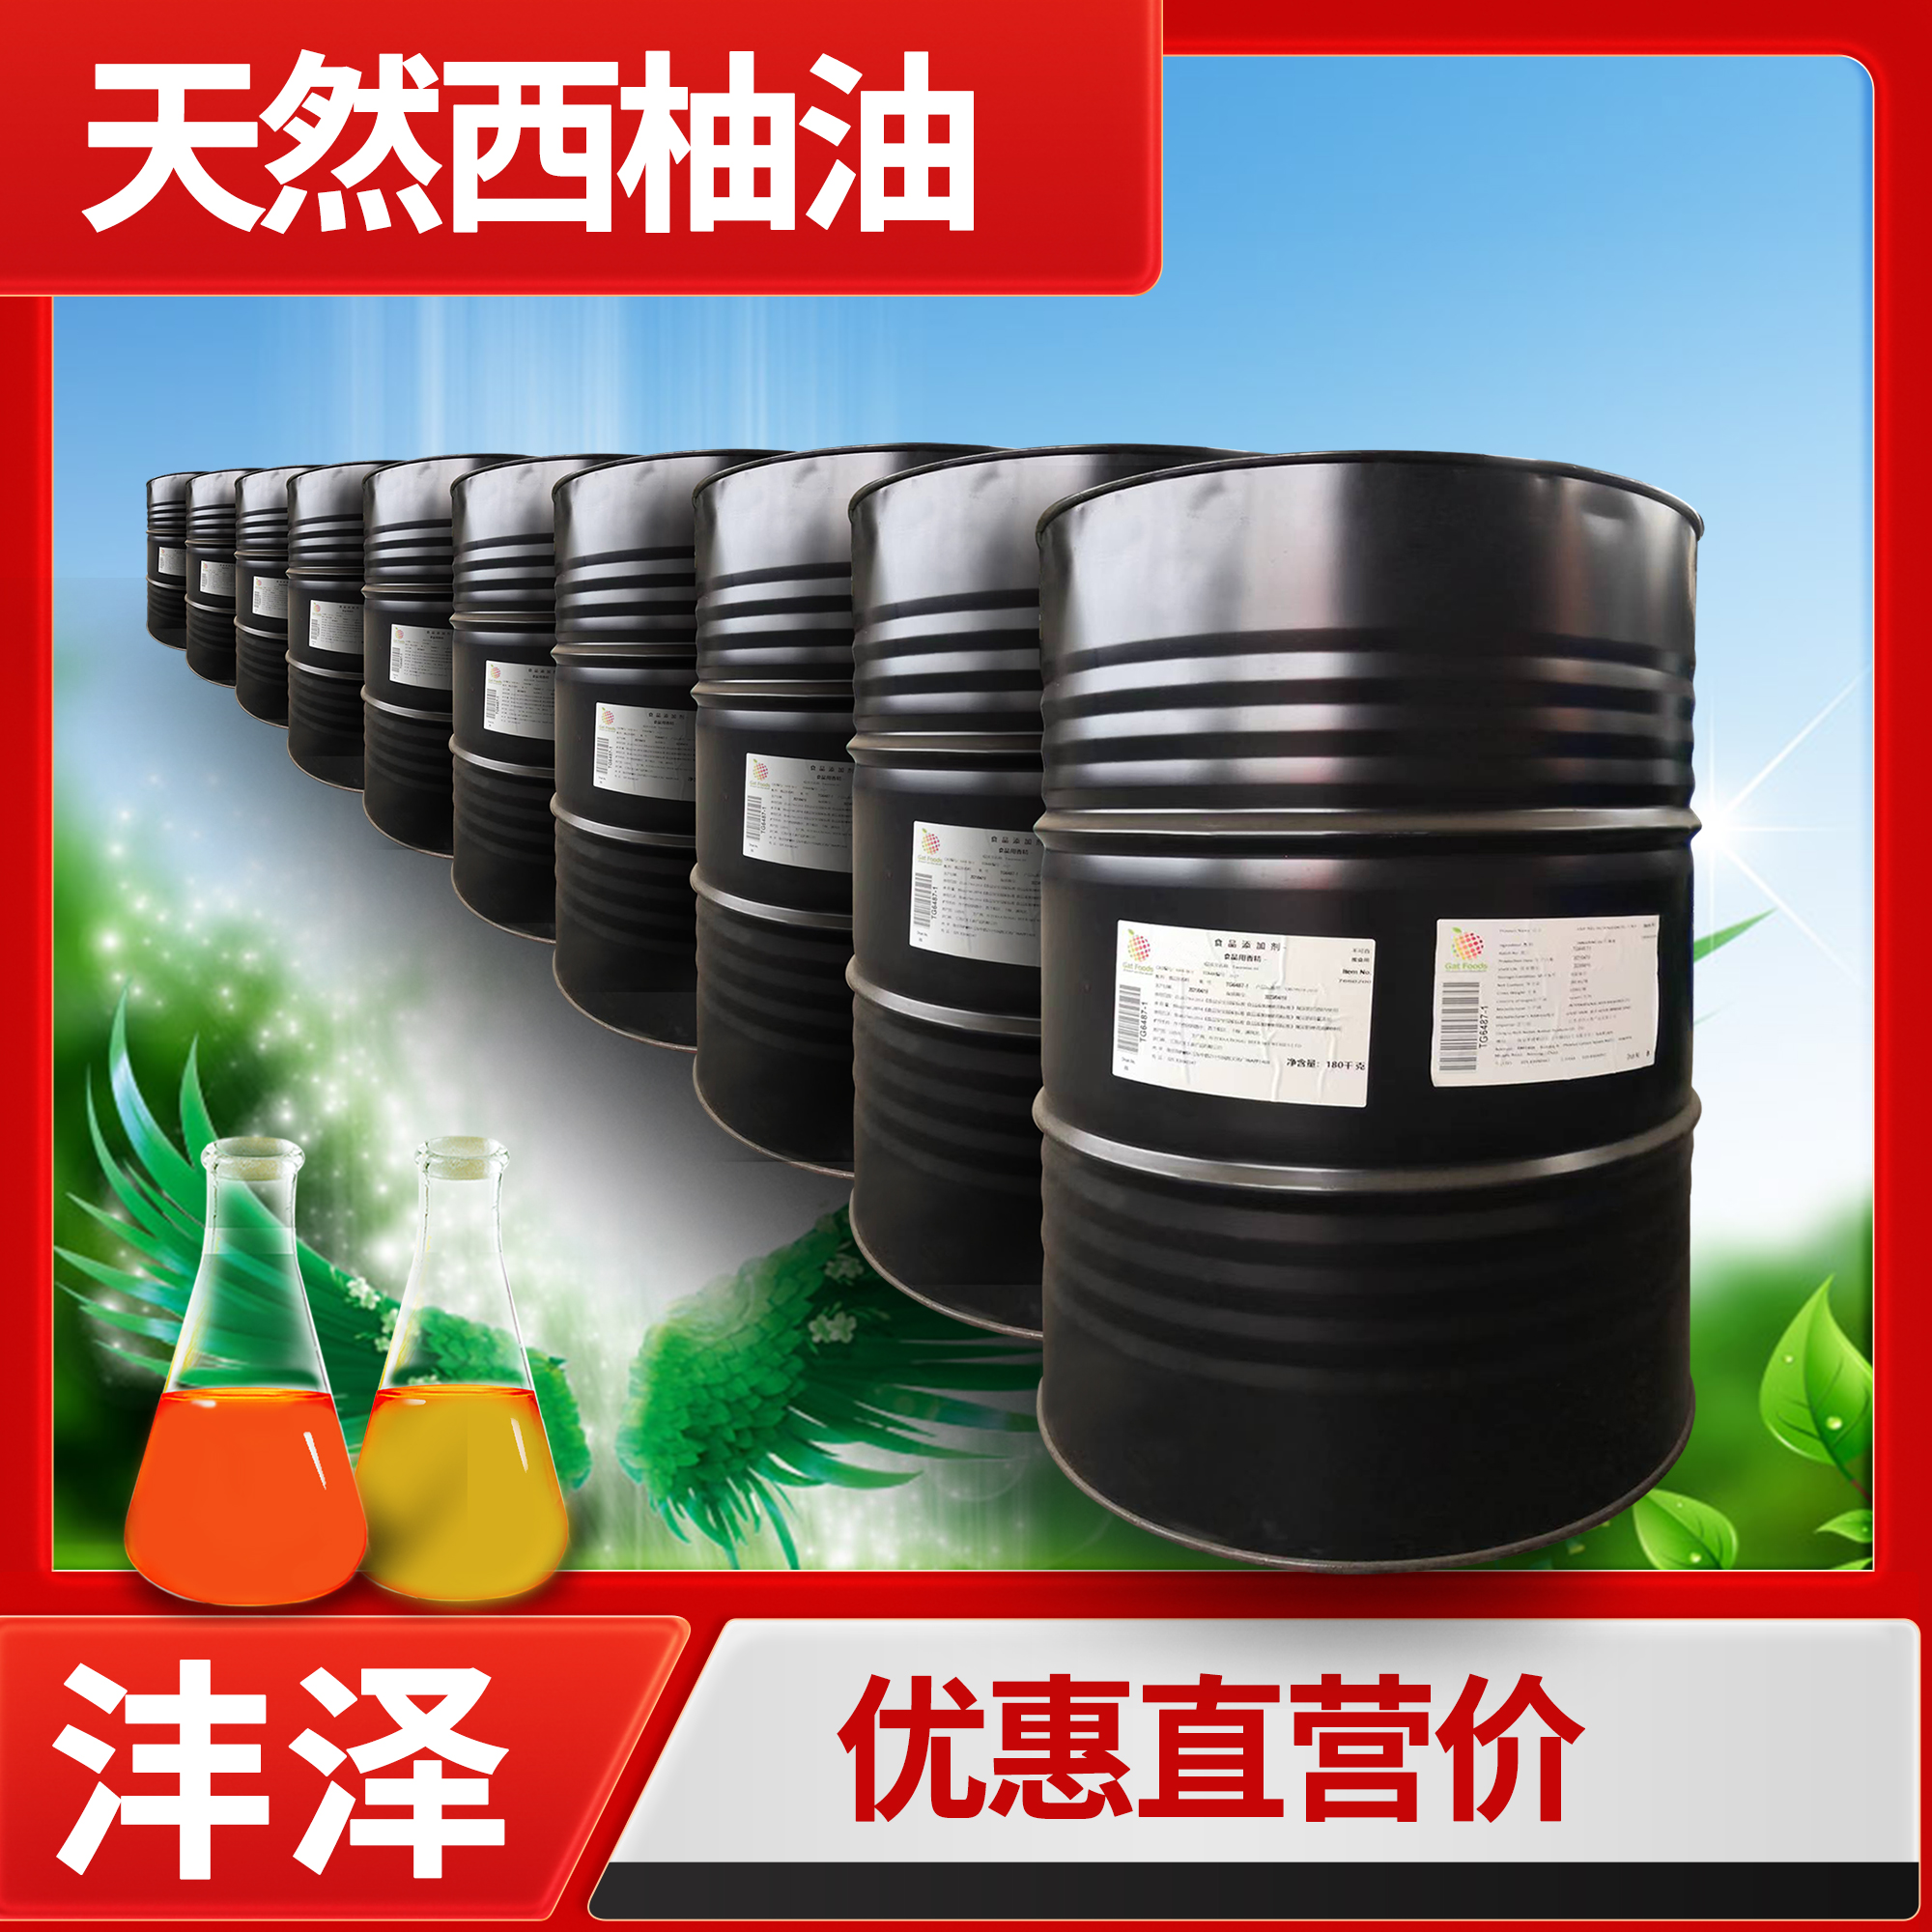 圆柚油成分 西柚油作用与功效 原厂直供提供进口证明【沣泽】